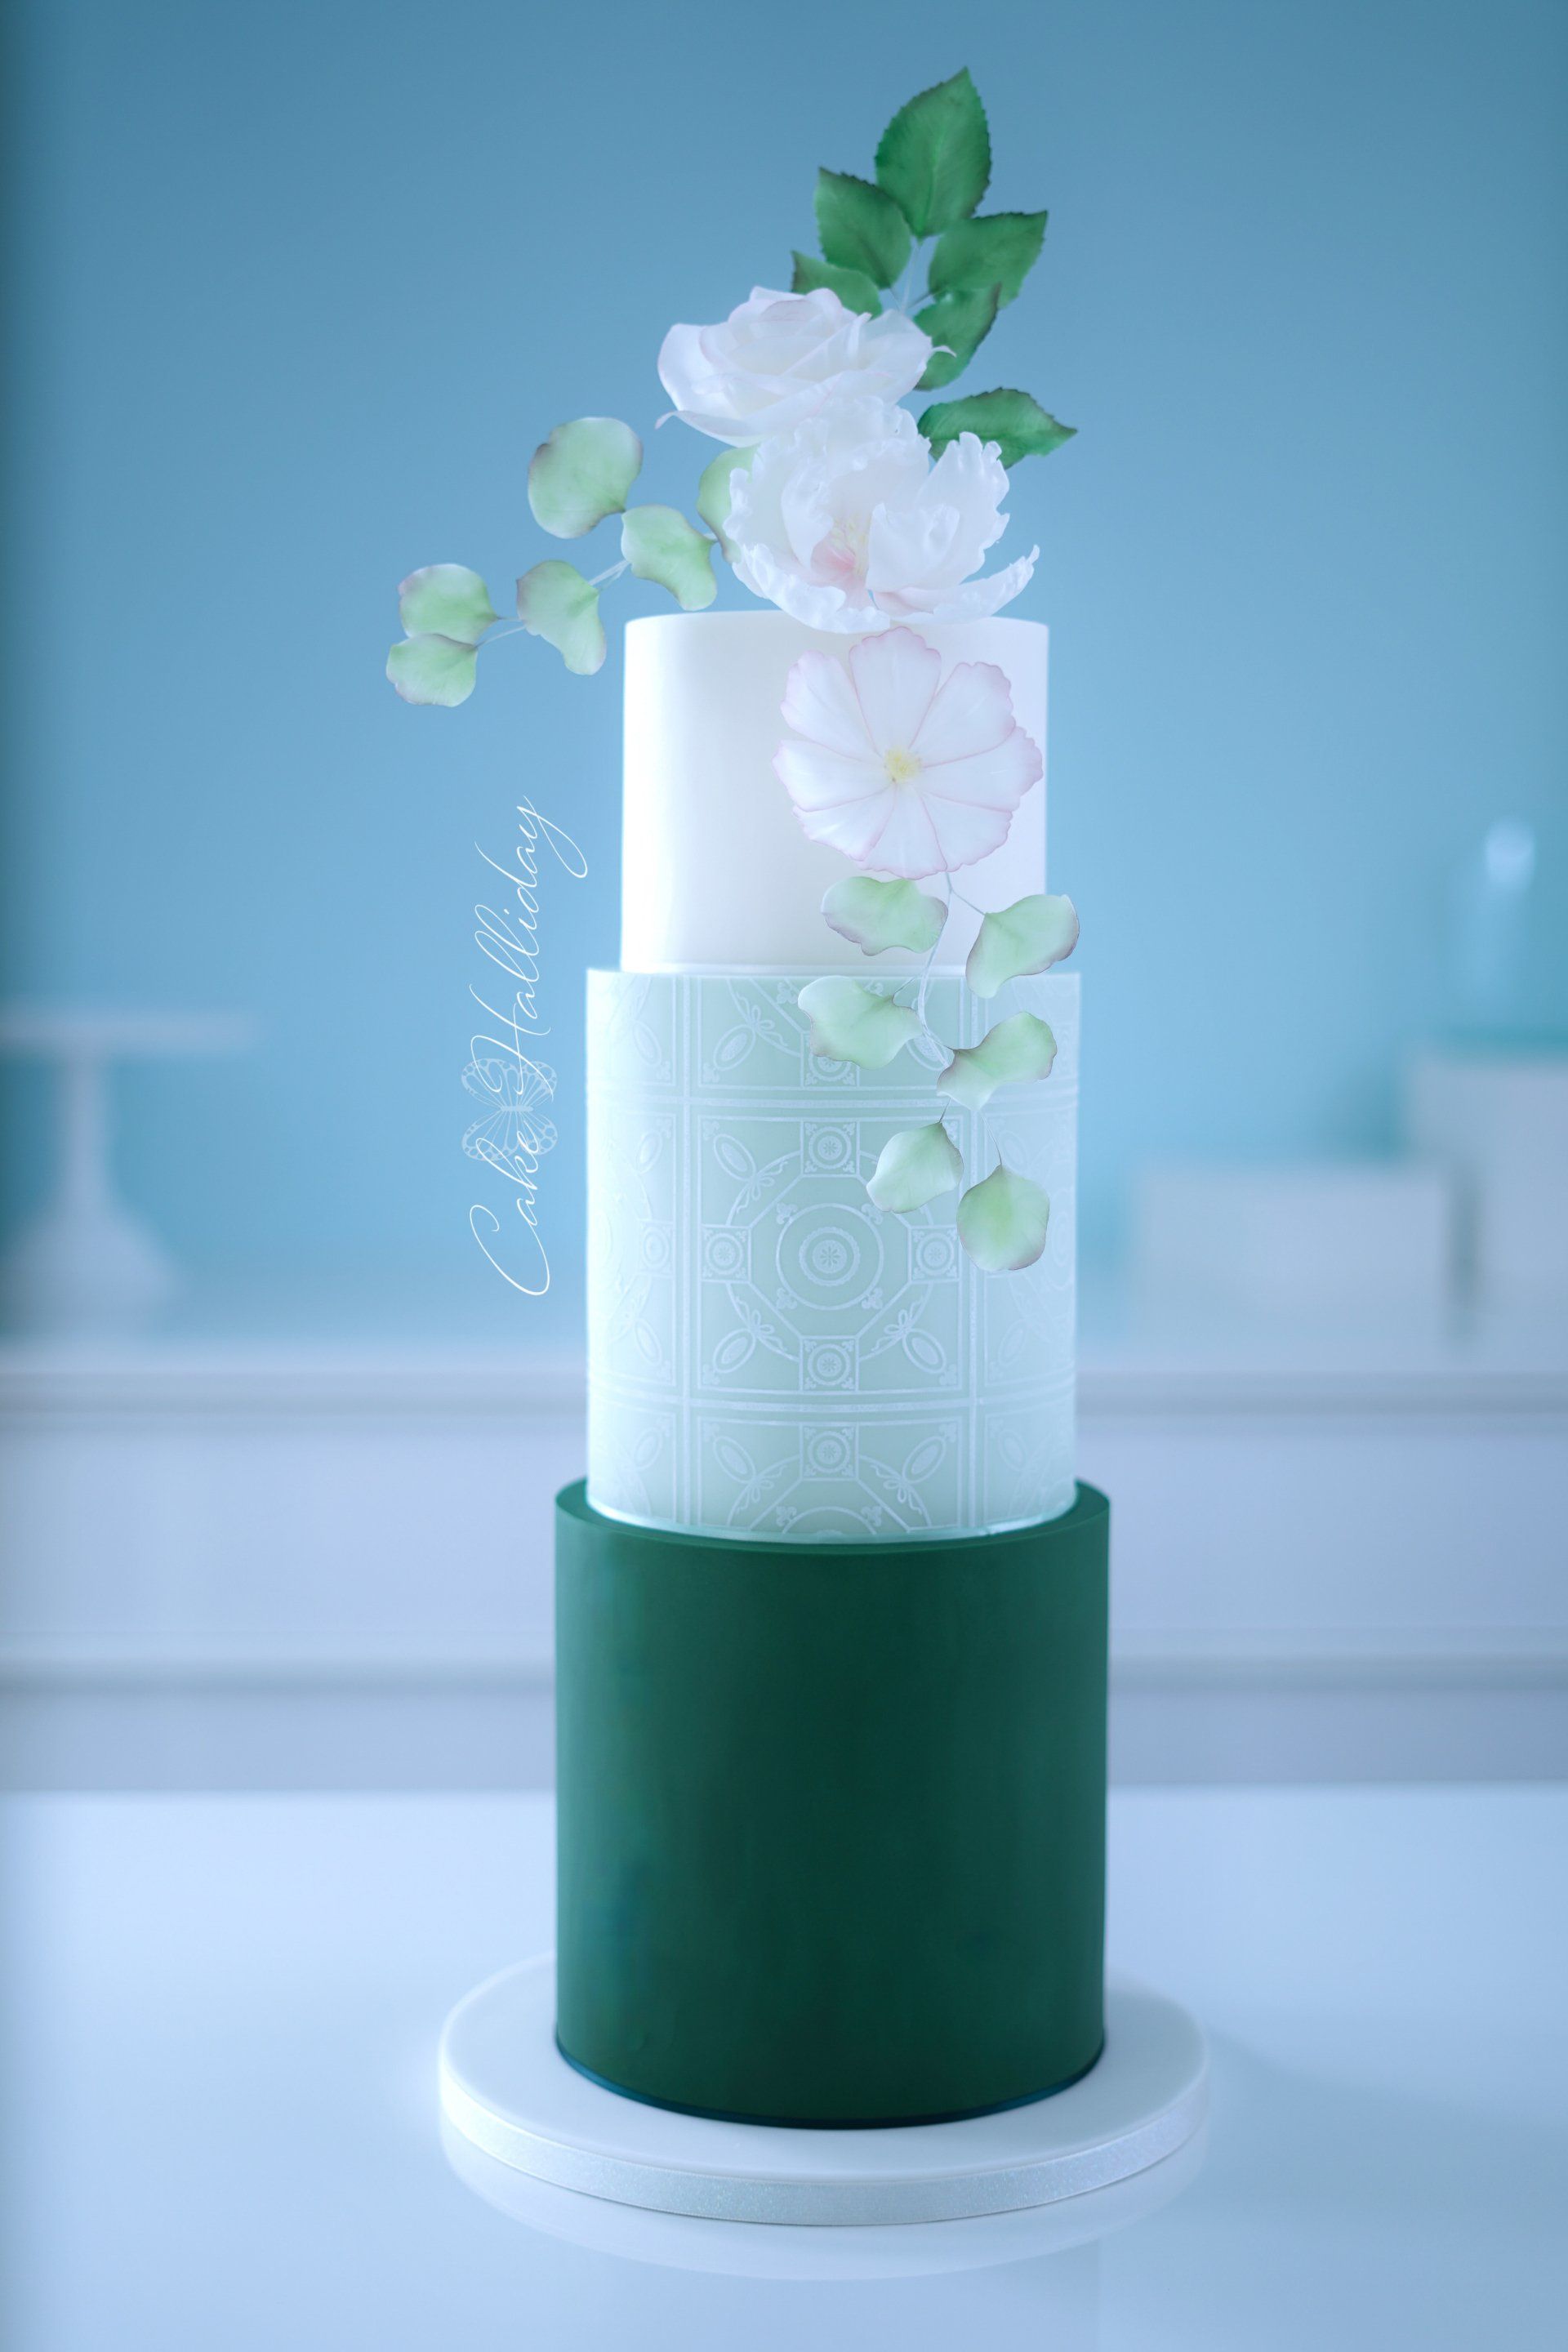 Sugar flowers and stencil wedding cake